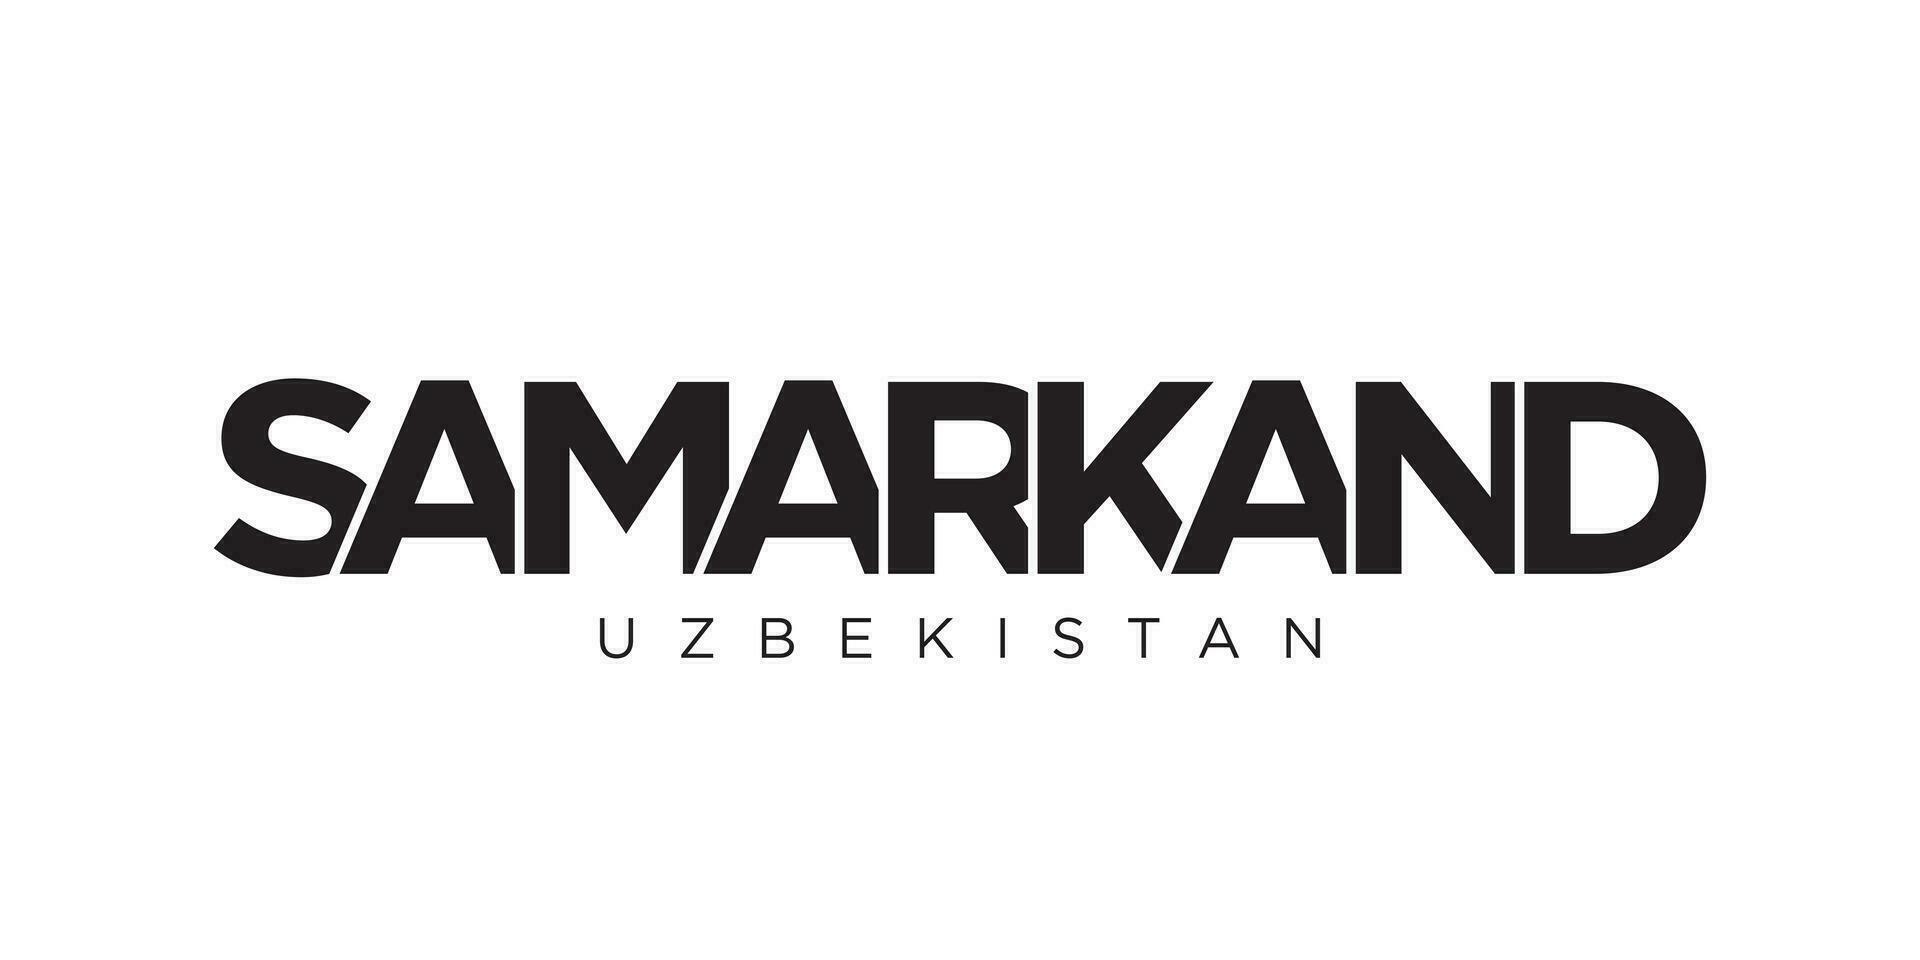 Samarcande dans le Ouzbékistan emblème. le conception Caractéristiques une géométrique style, vecteur illustration avec audacieux typographie dans une moderne Police de caractère. le graphique slogan caractères.